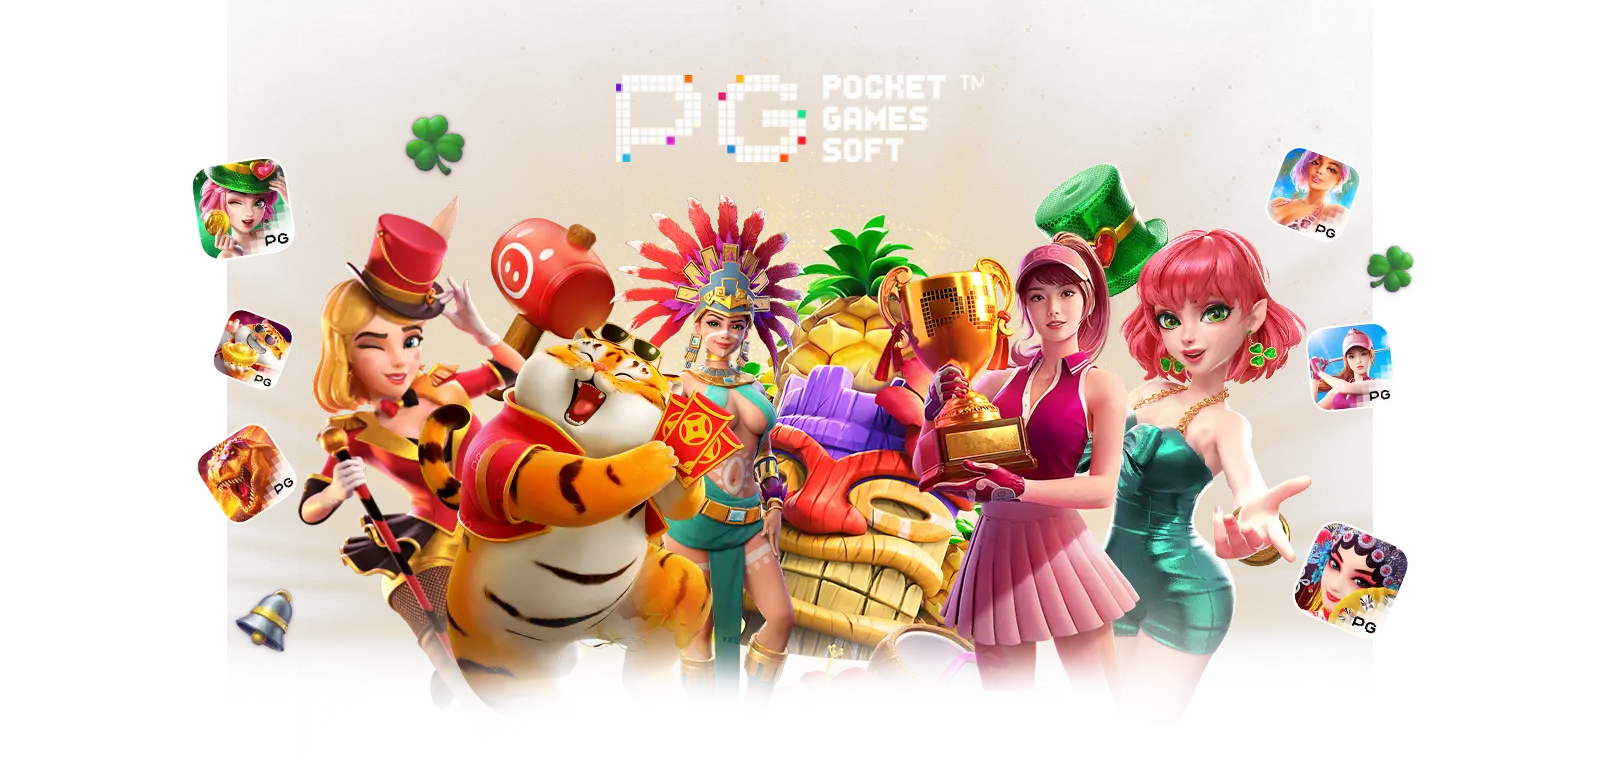 PG Pocket Games Soft